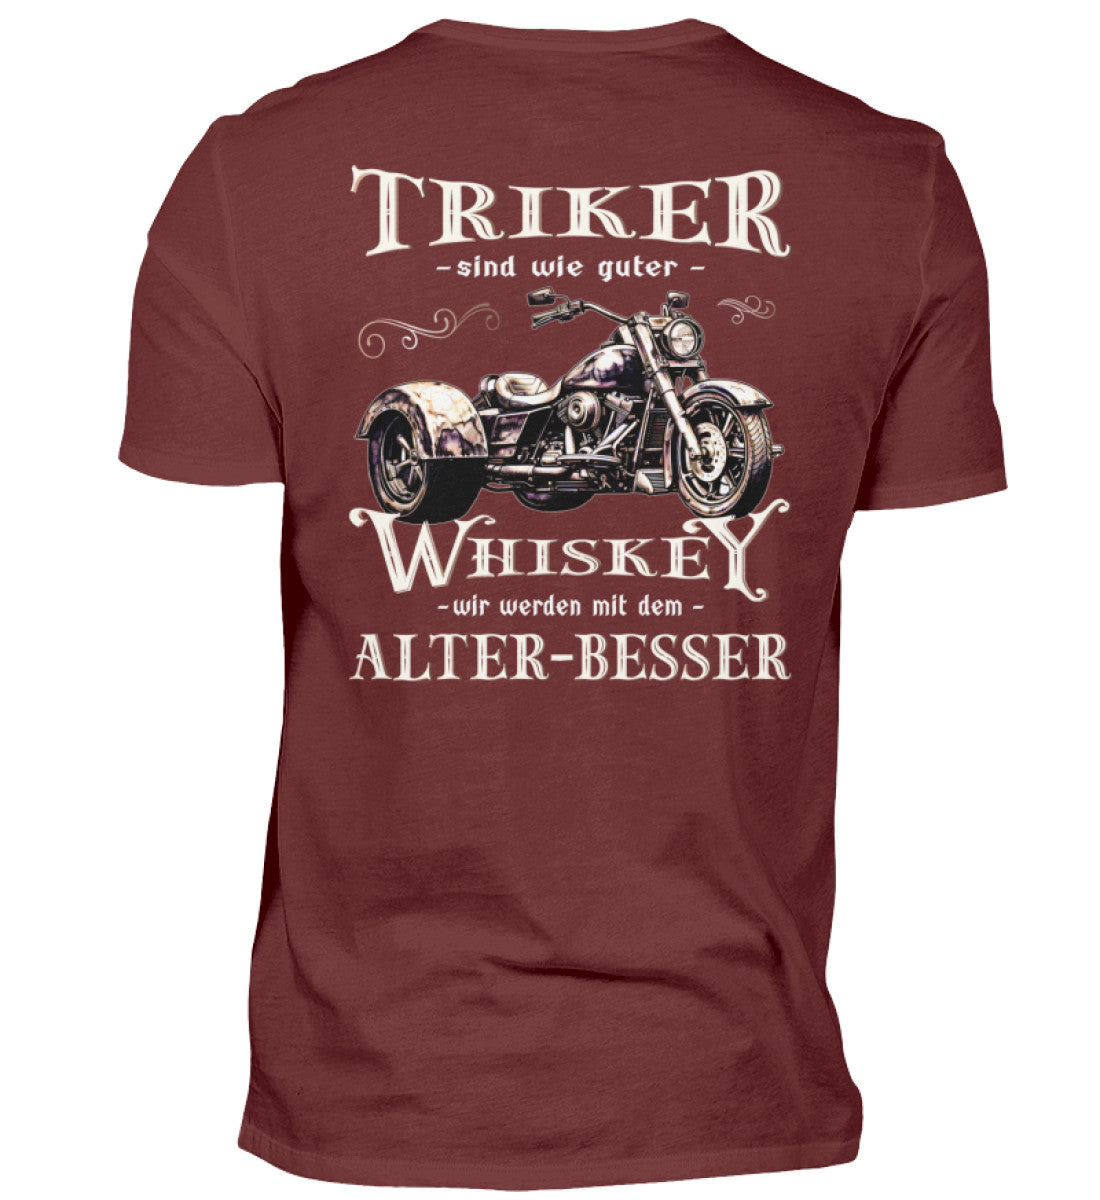 Ein T-Shirt für Trike Fahrer von Wingbikers mit dem Aufdruck, Triker sind wie guter Whiskey - Wir werden mit dem Alter besser, als Back Print, in weinrot.